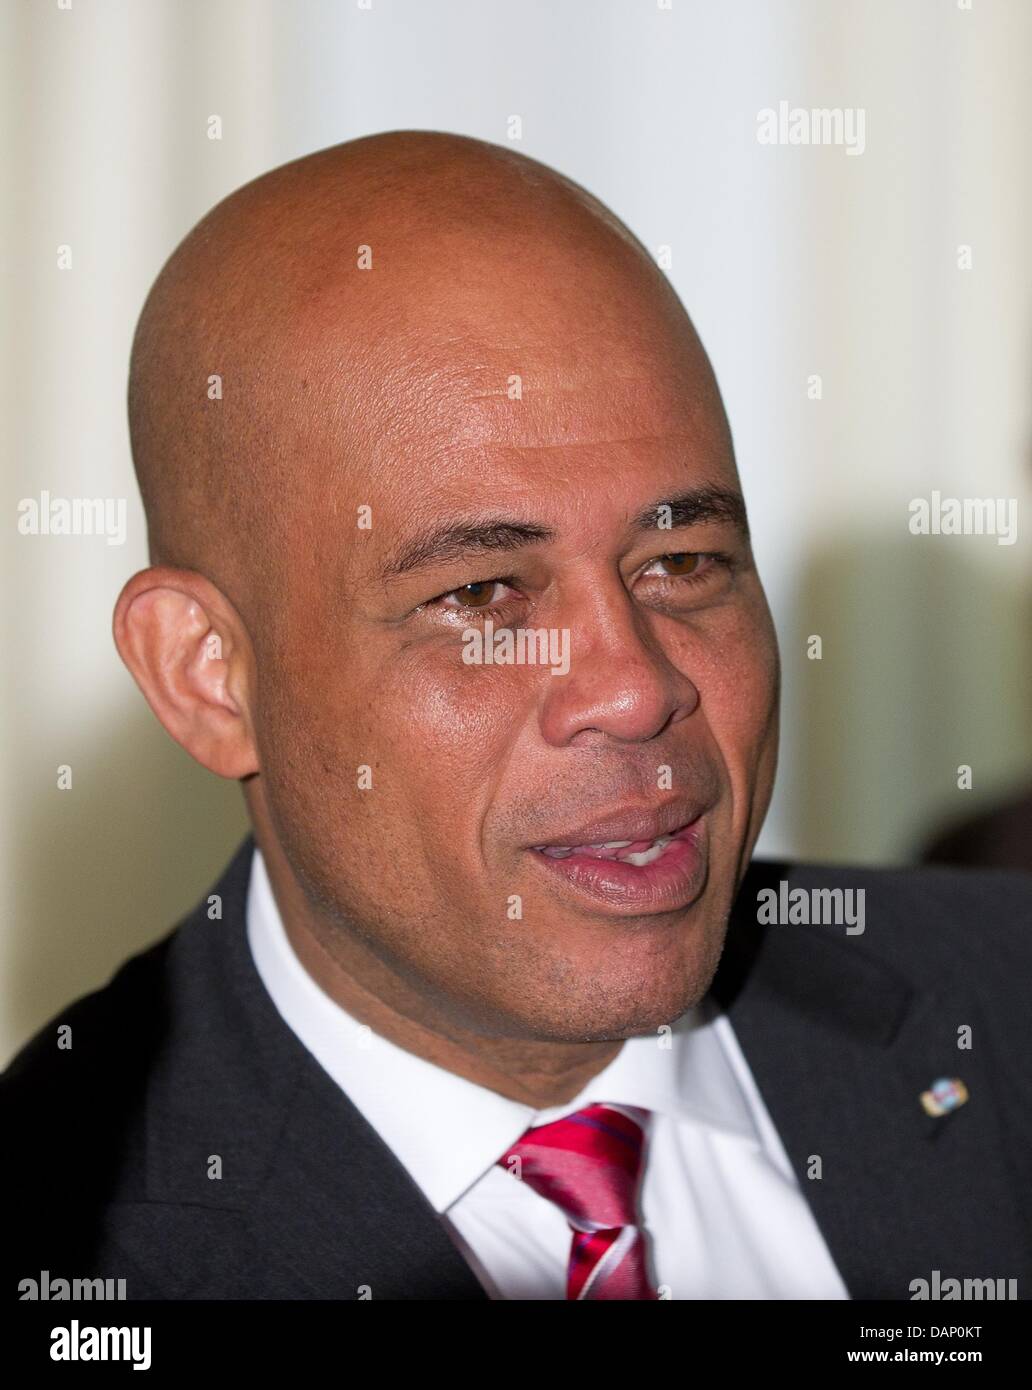 President of haiti Banque de photographies et d'images à haute résolution -  Page 2 - Alamy